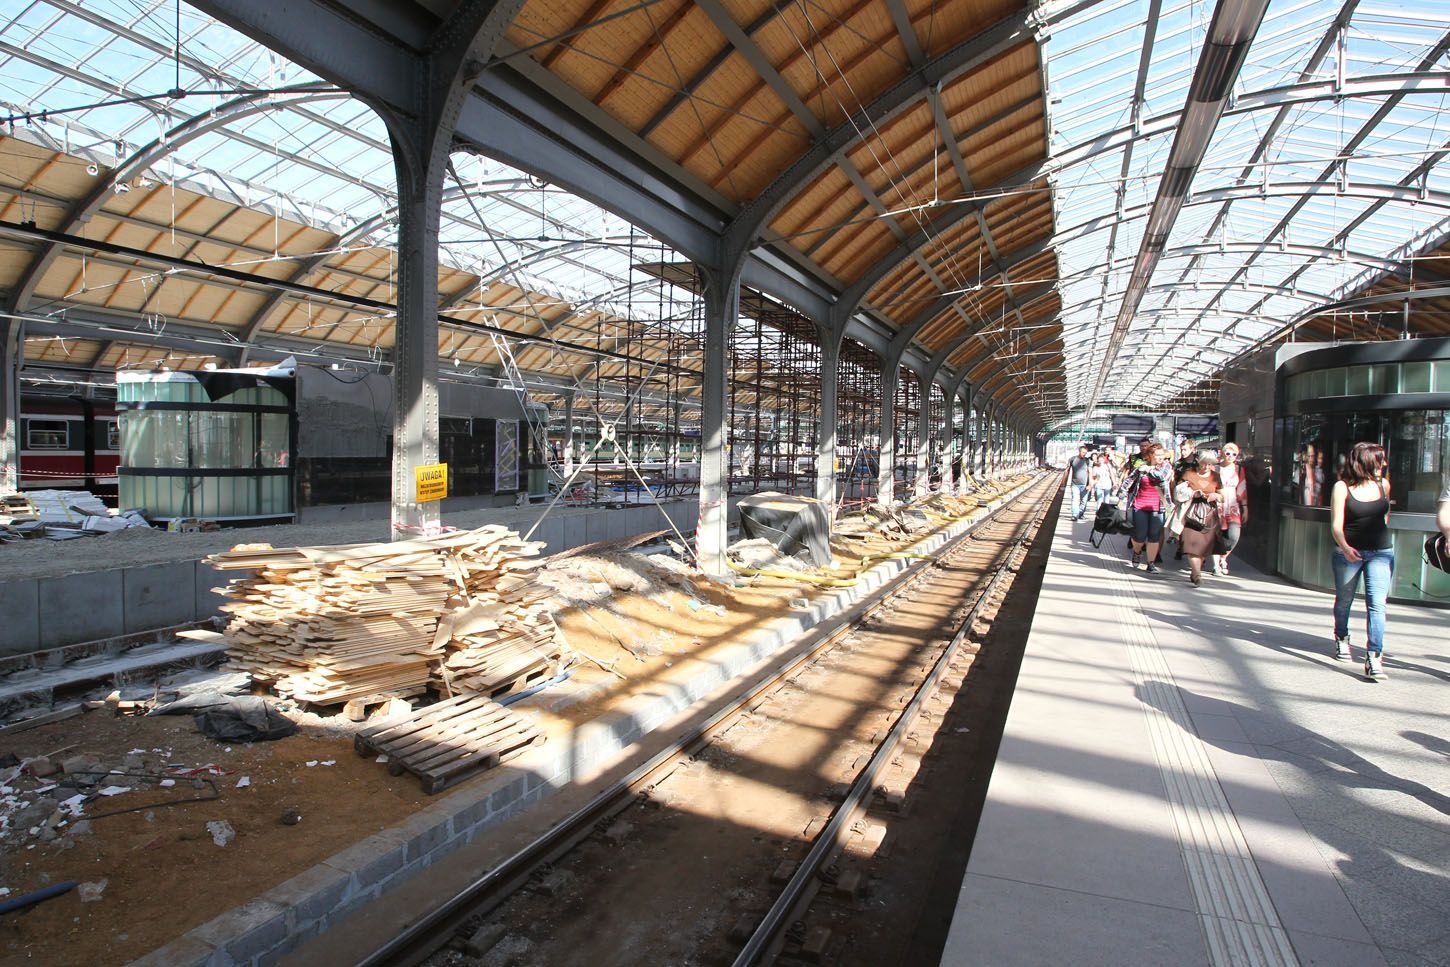 Vlakové nádraží ve Vratislavi